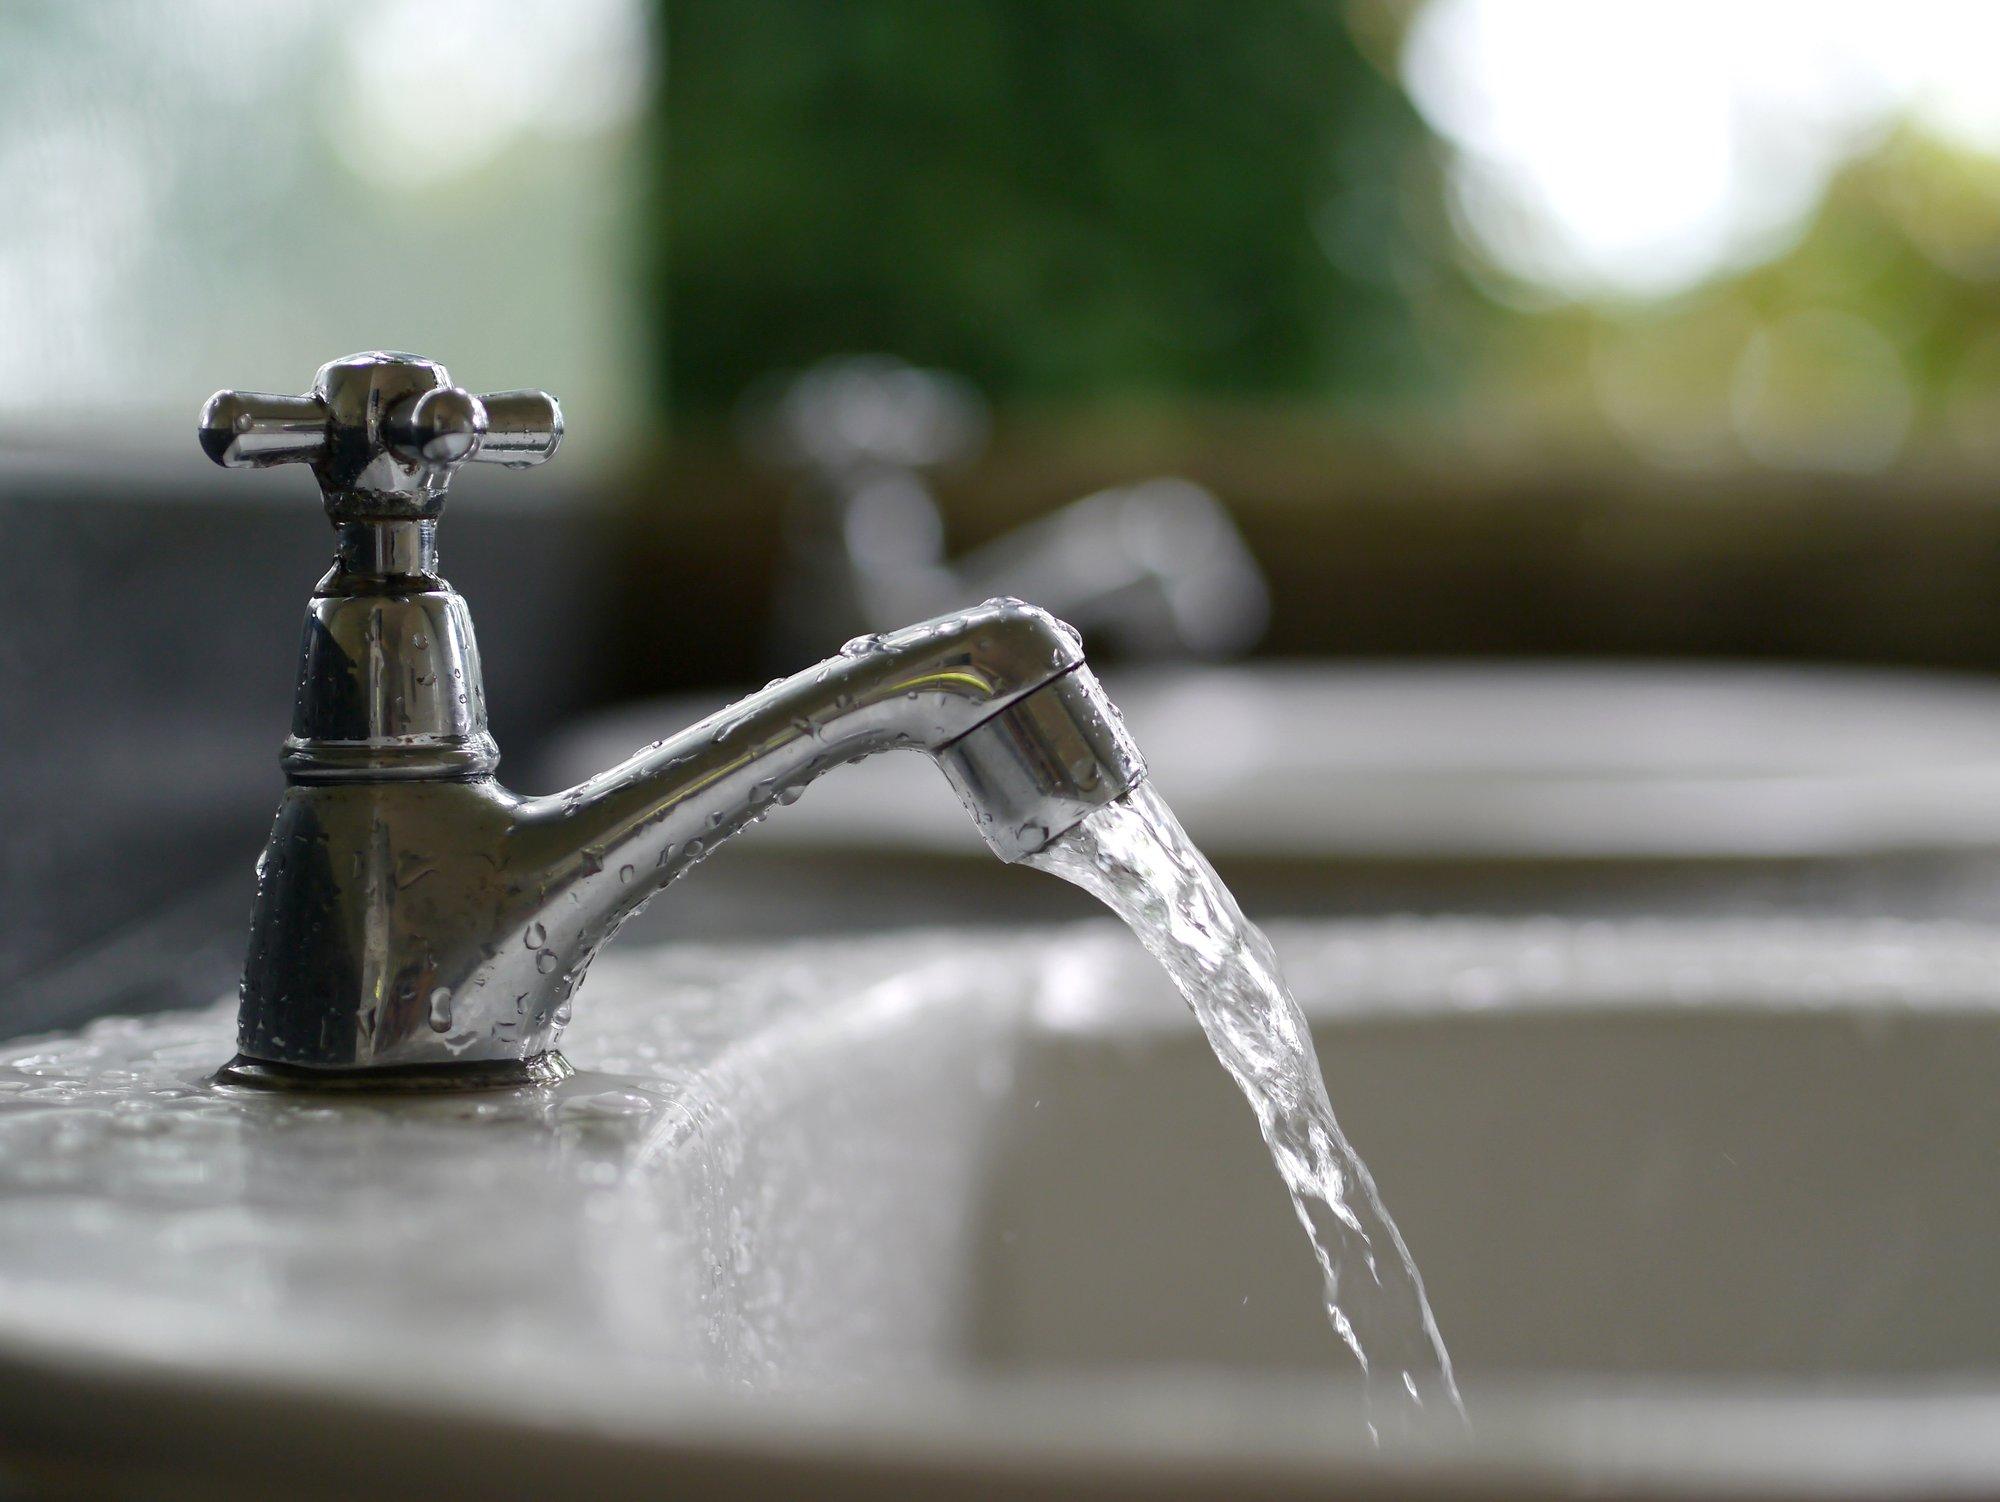 Zarasų rajono savivaldybė pasirašė sutartį su „Infes technologijos“ dėl vandens kokybės gerinimo